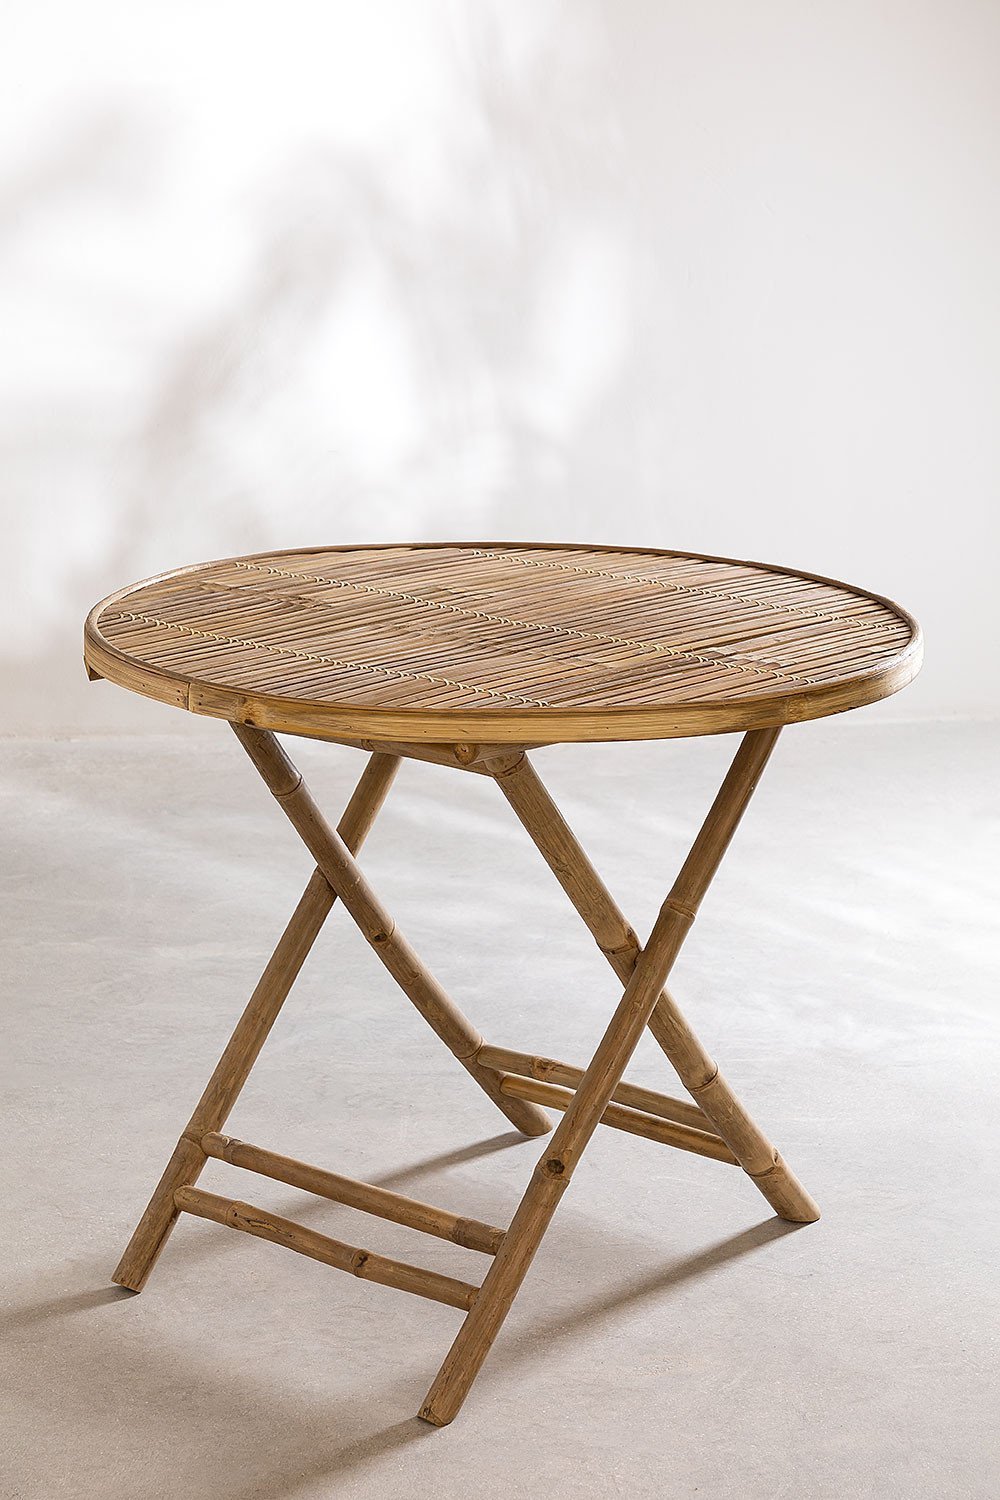 TABLE DE JARDIN RONDE Ø 90 cm